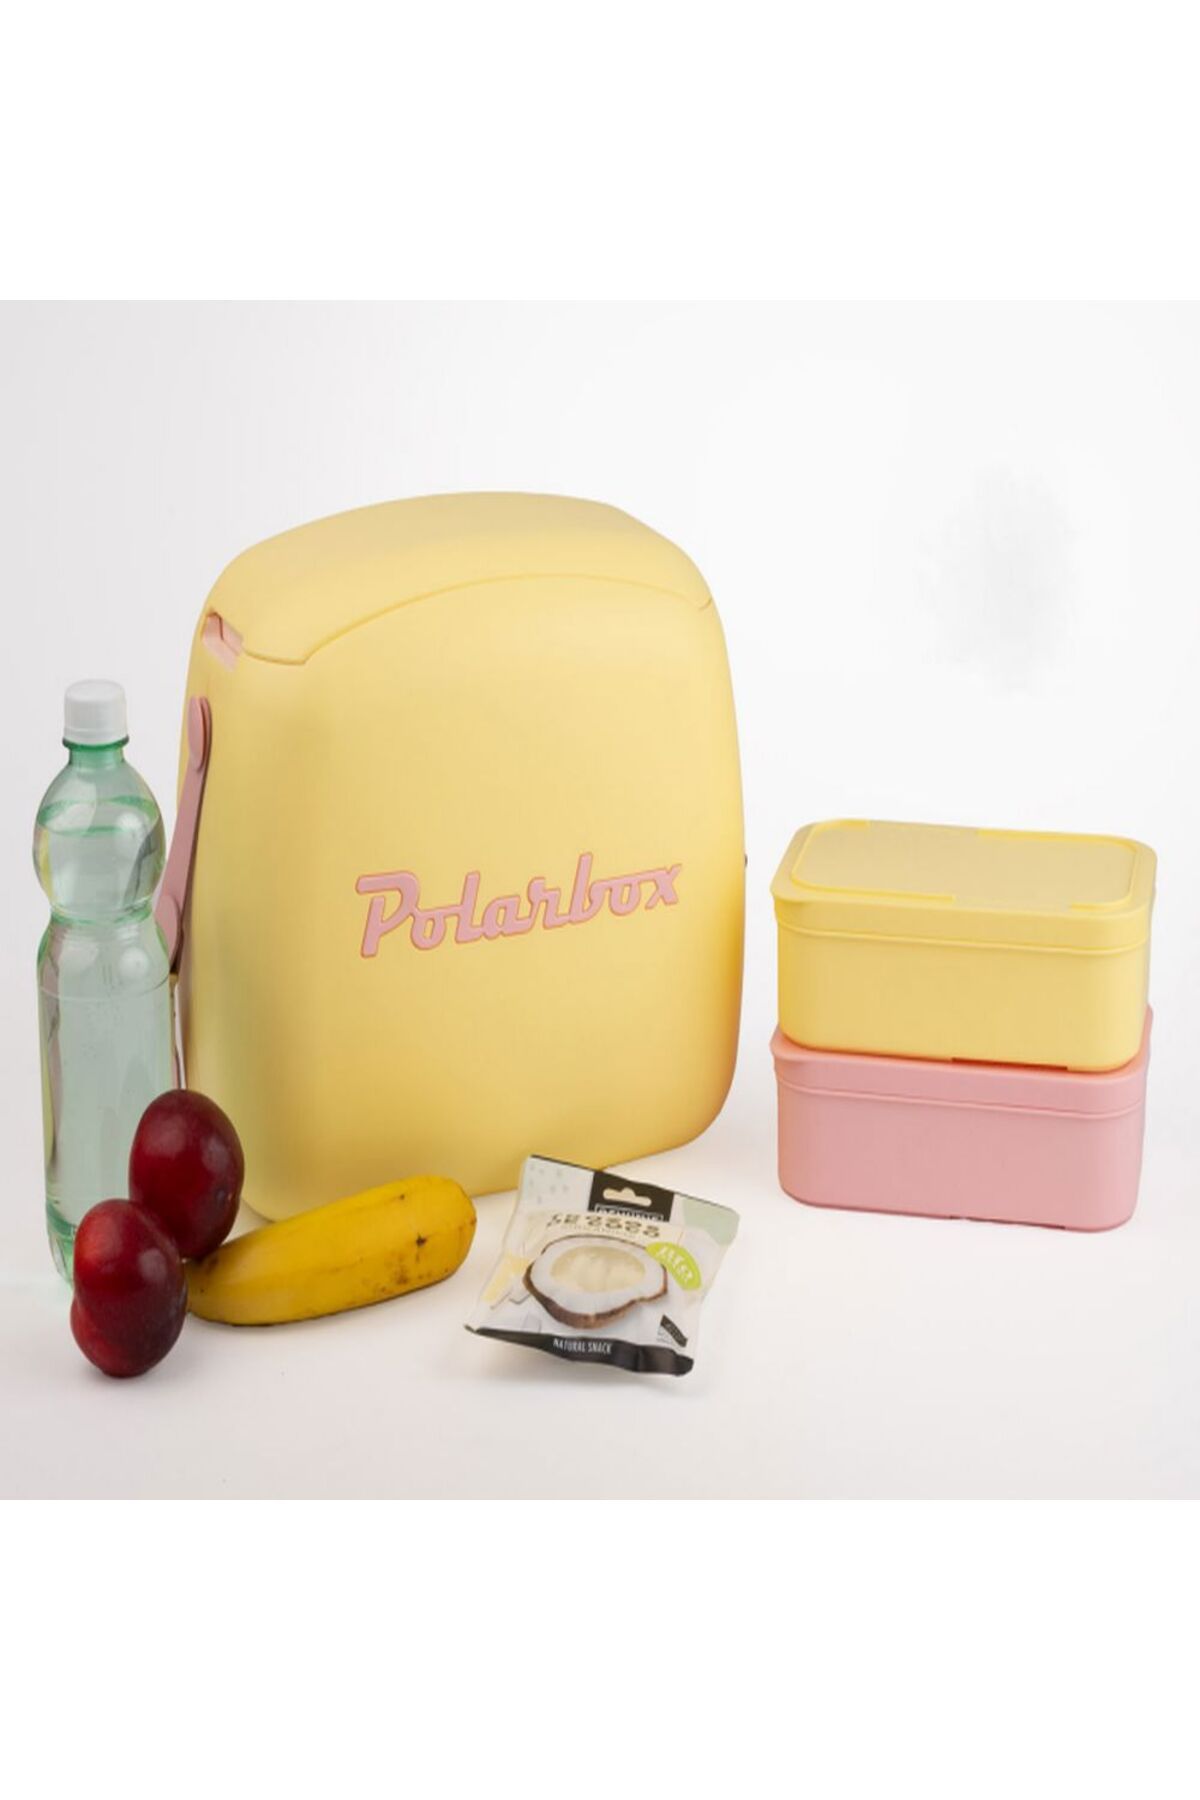 Polarbox COOLER BAG AMARILLO - ROSA POP